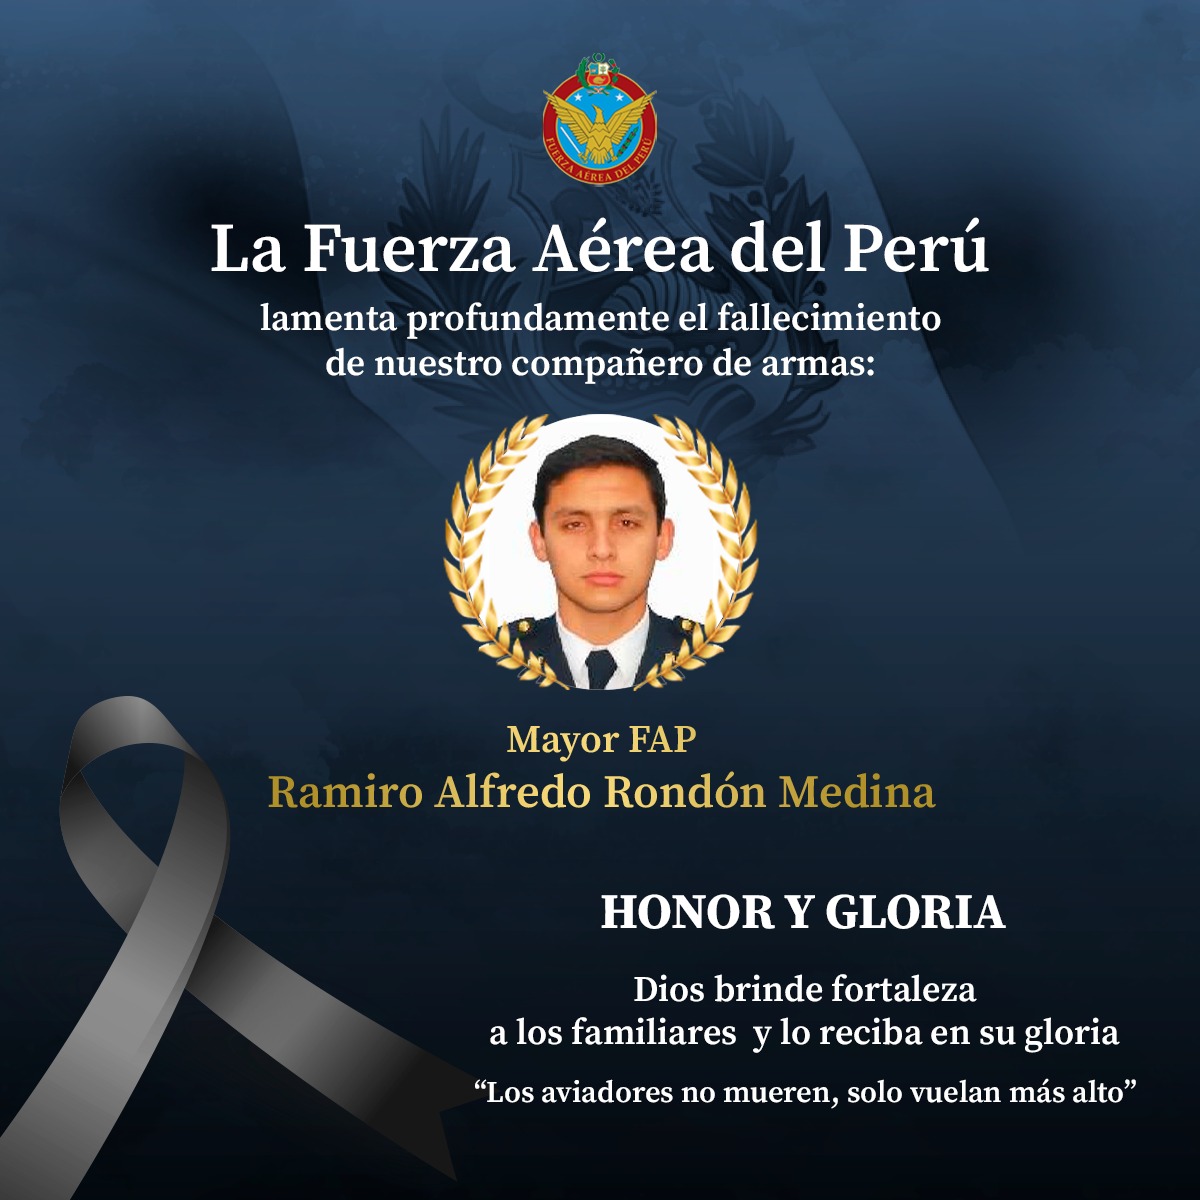 La Fuerza Aérea del Perú expresa sus más profundas condolencias a la familia y compañeros de armas del Mayor FAP Ramiro Alfredo Rondón Medina. Vuela alto, Témpano. 🕊️